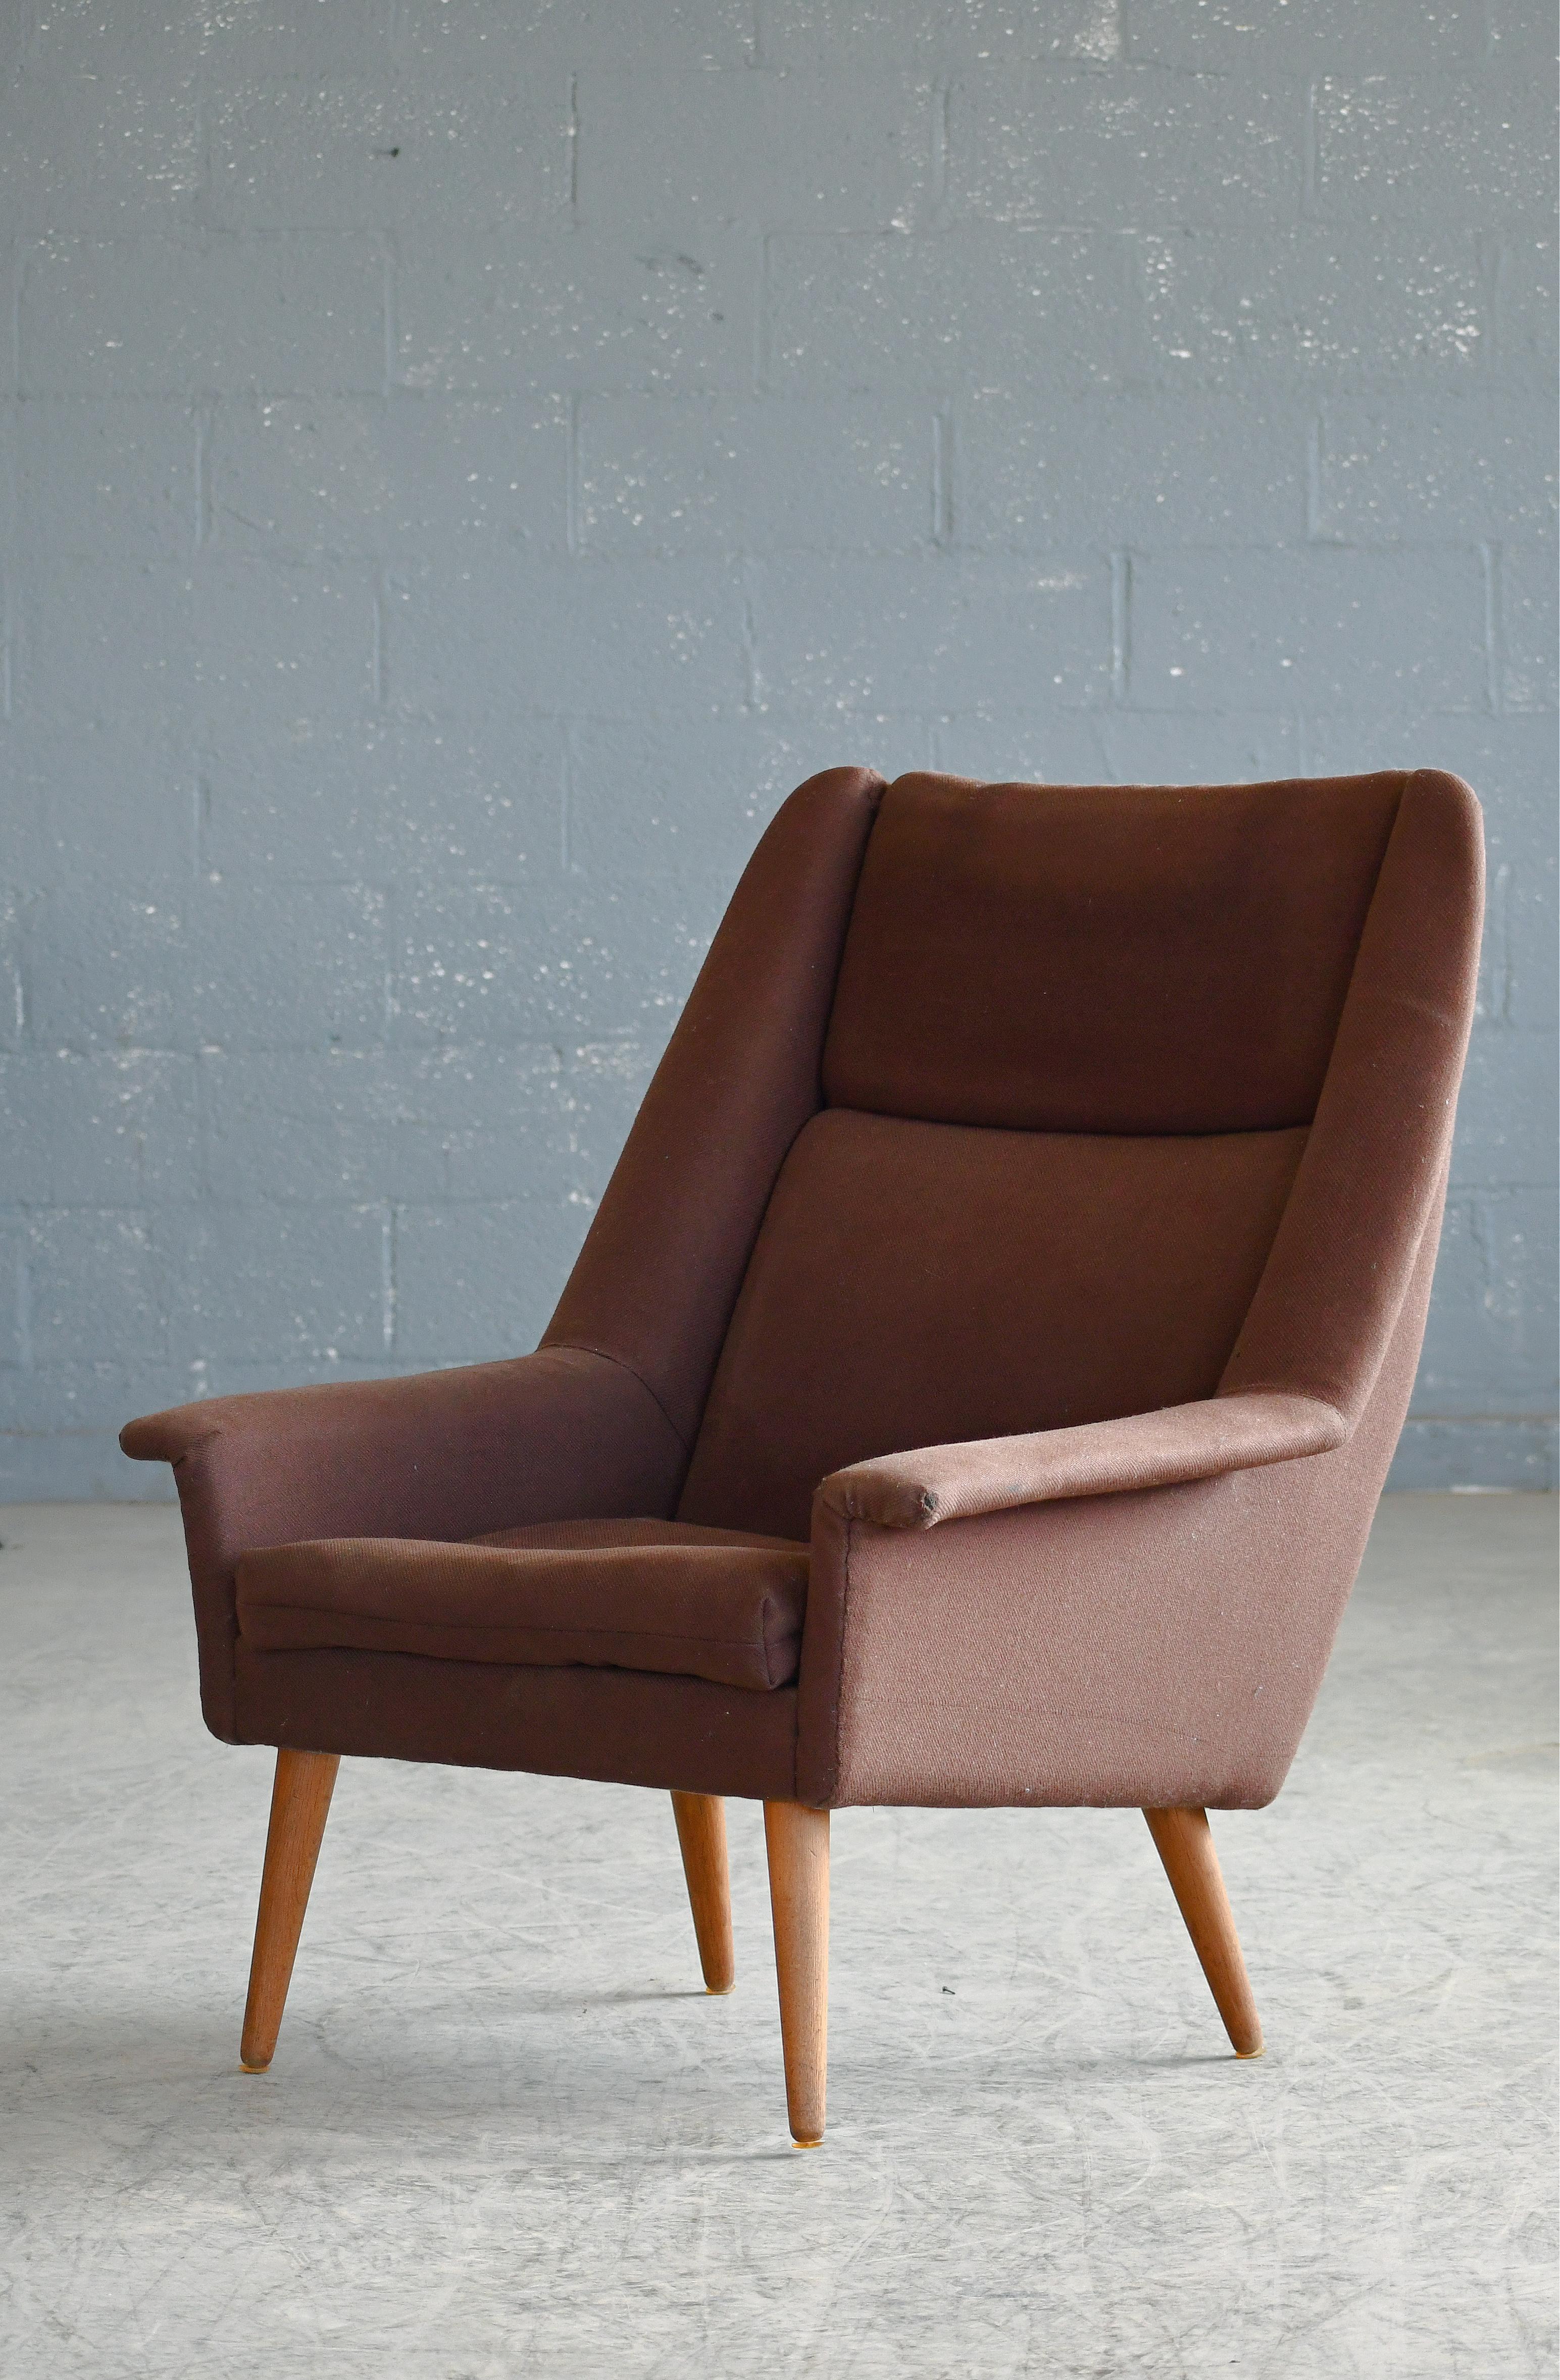 Magnifique chaise de salon moderne danoise classique de la fin des années 1950 ou du début des années 1960 sur des pieds effilés en teck. Le dossier incliné et l'assise rembourrée épaisse offrent un confort maximum. Un design élégant et robuste qui